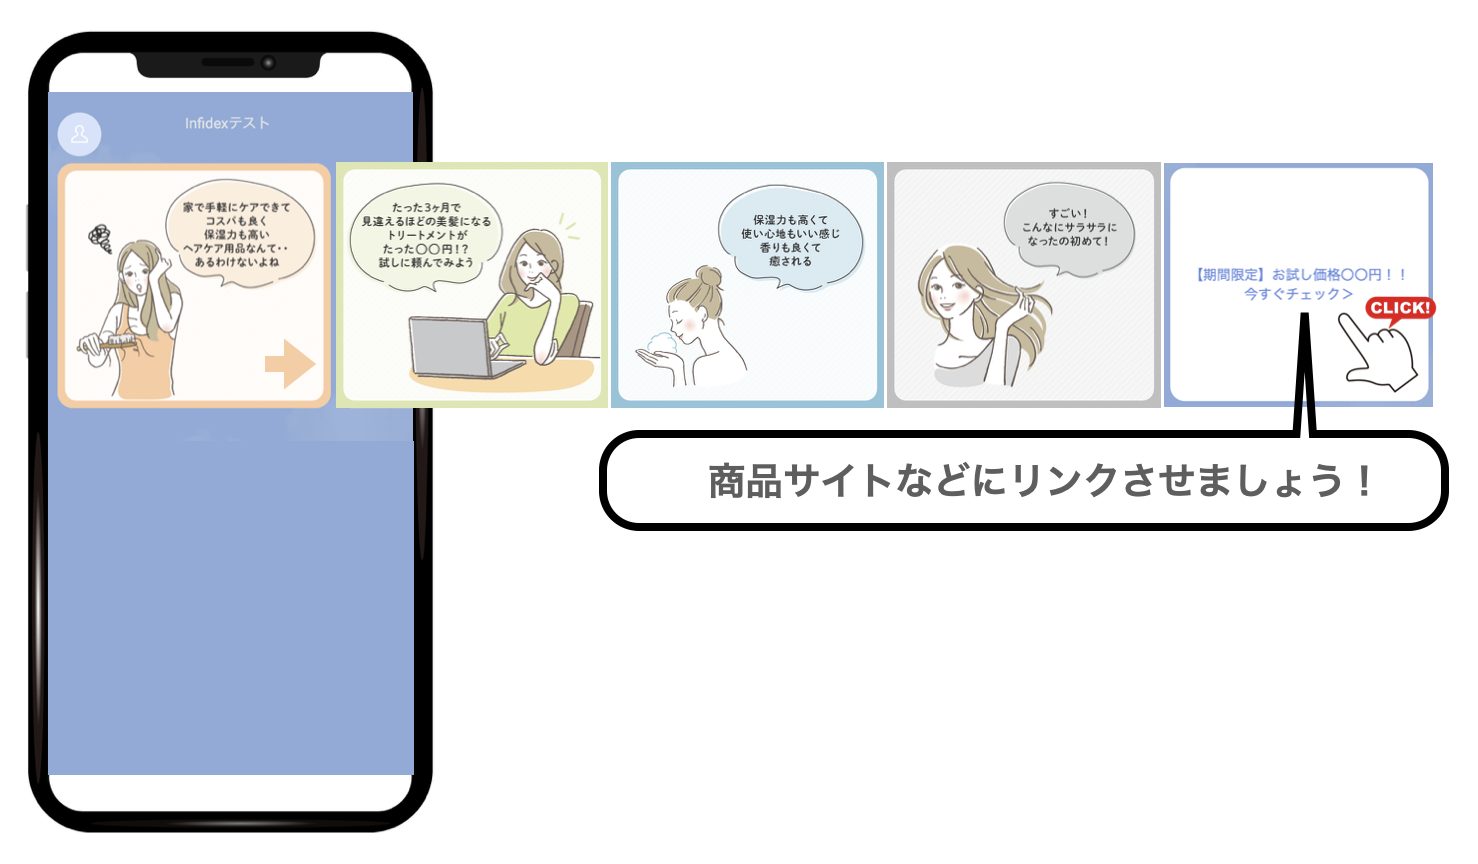 カードタイプメッセージを利用した漫画の実例